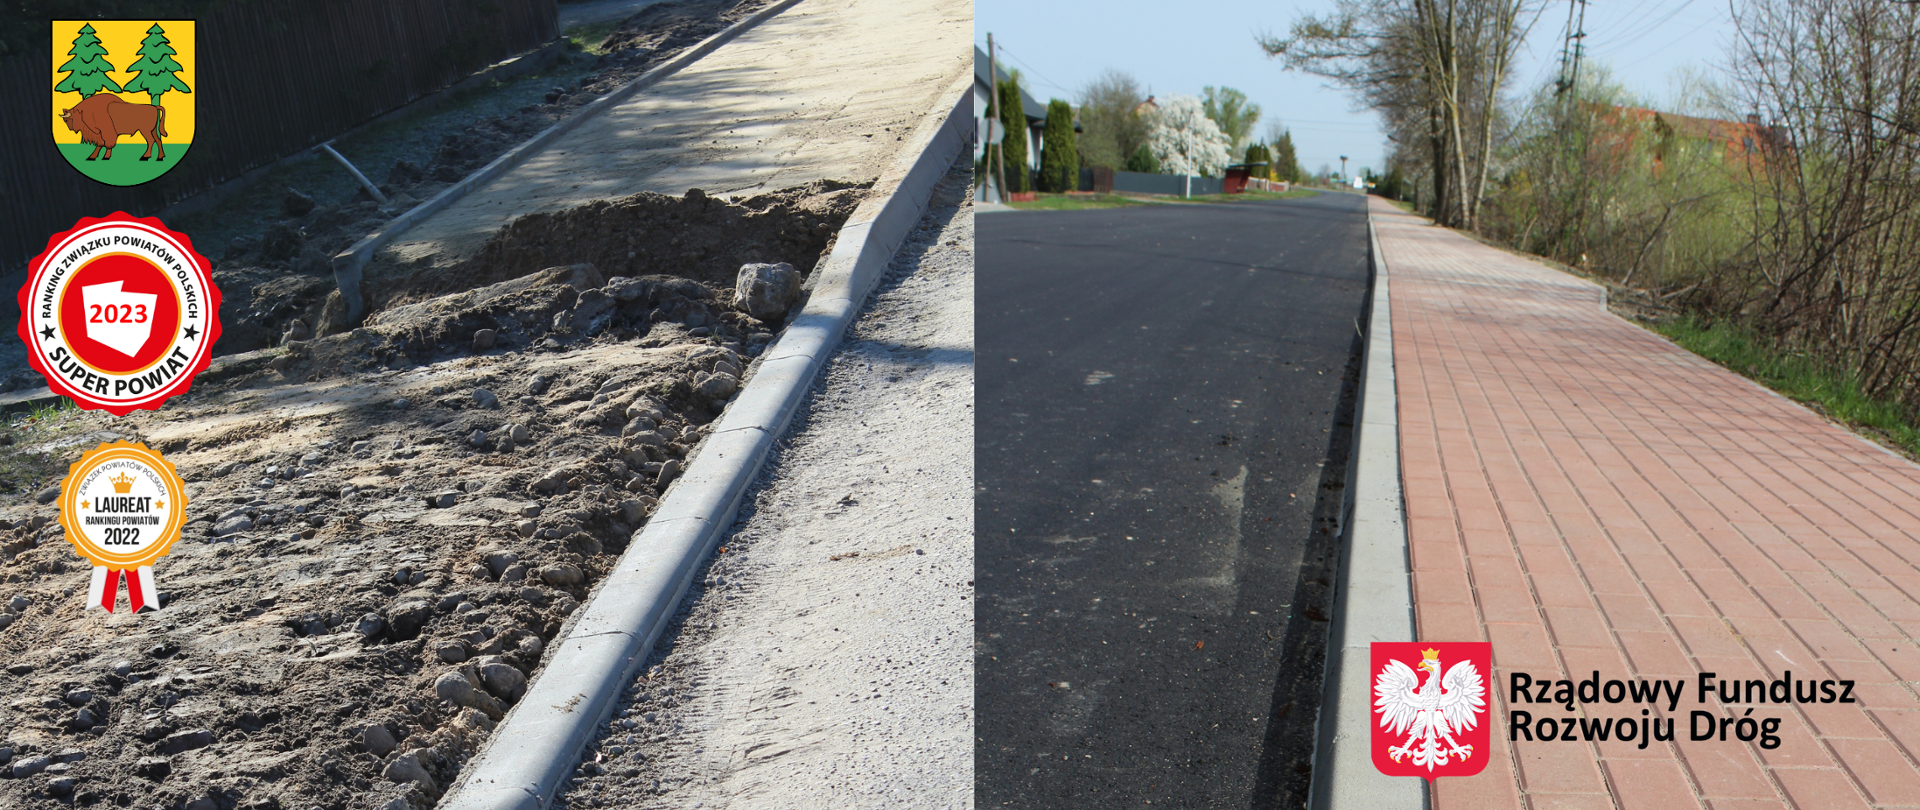 Kolaż zdjęć przedstawiający efekt przed przebudową chodnik i po - po lewej prace nad przebudową, po prawej - nowy chodnik i nawierzchnia drogi